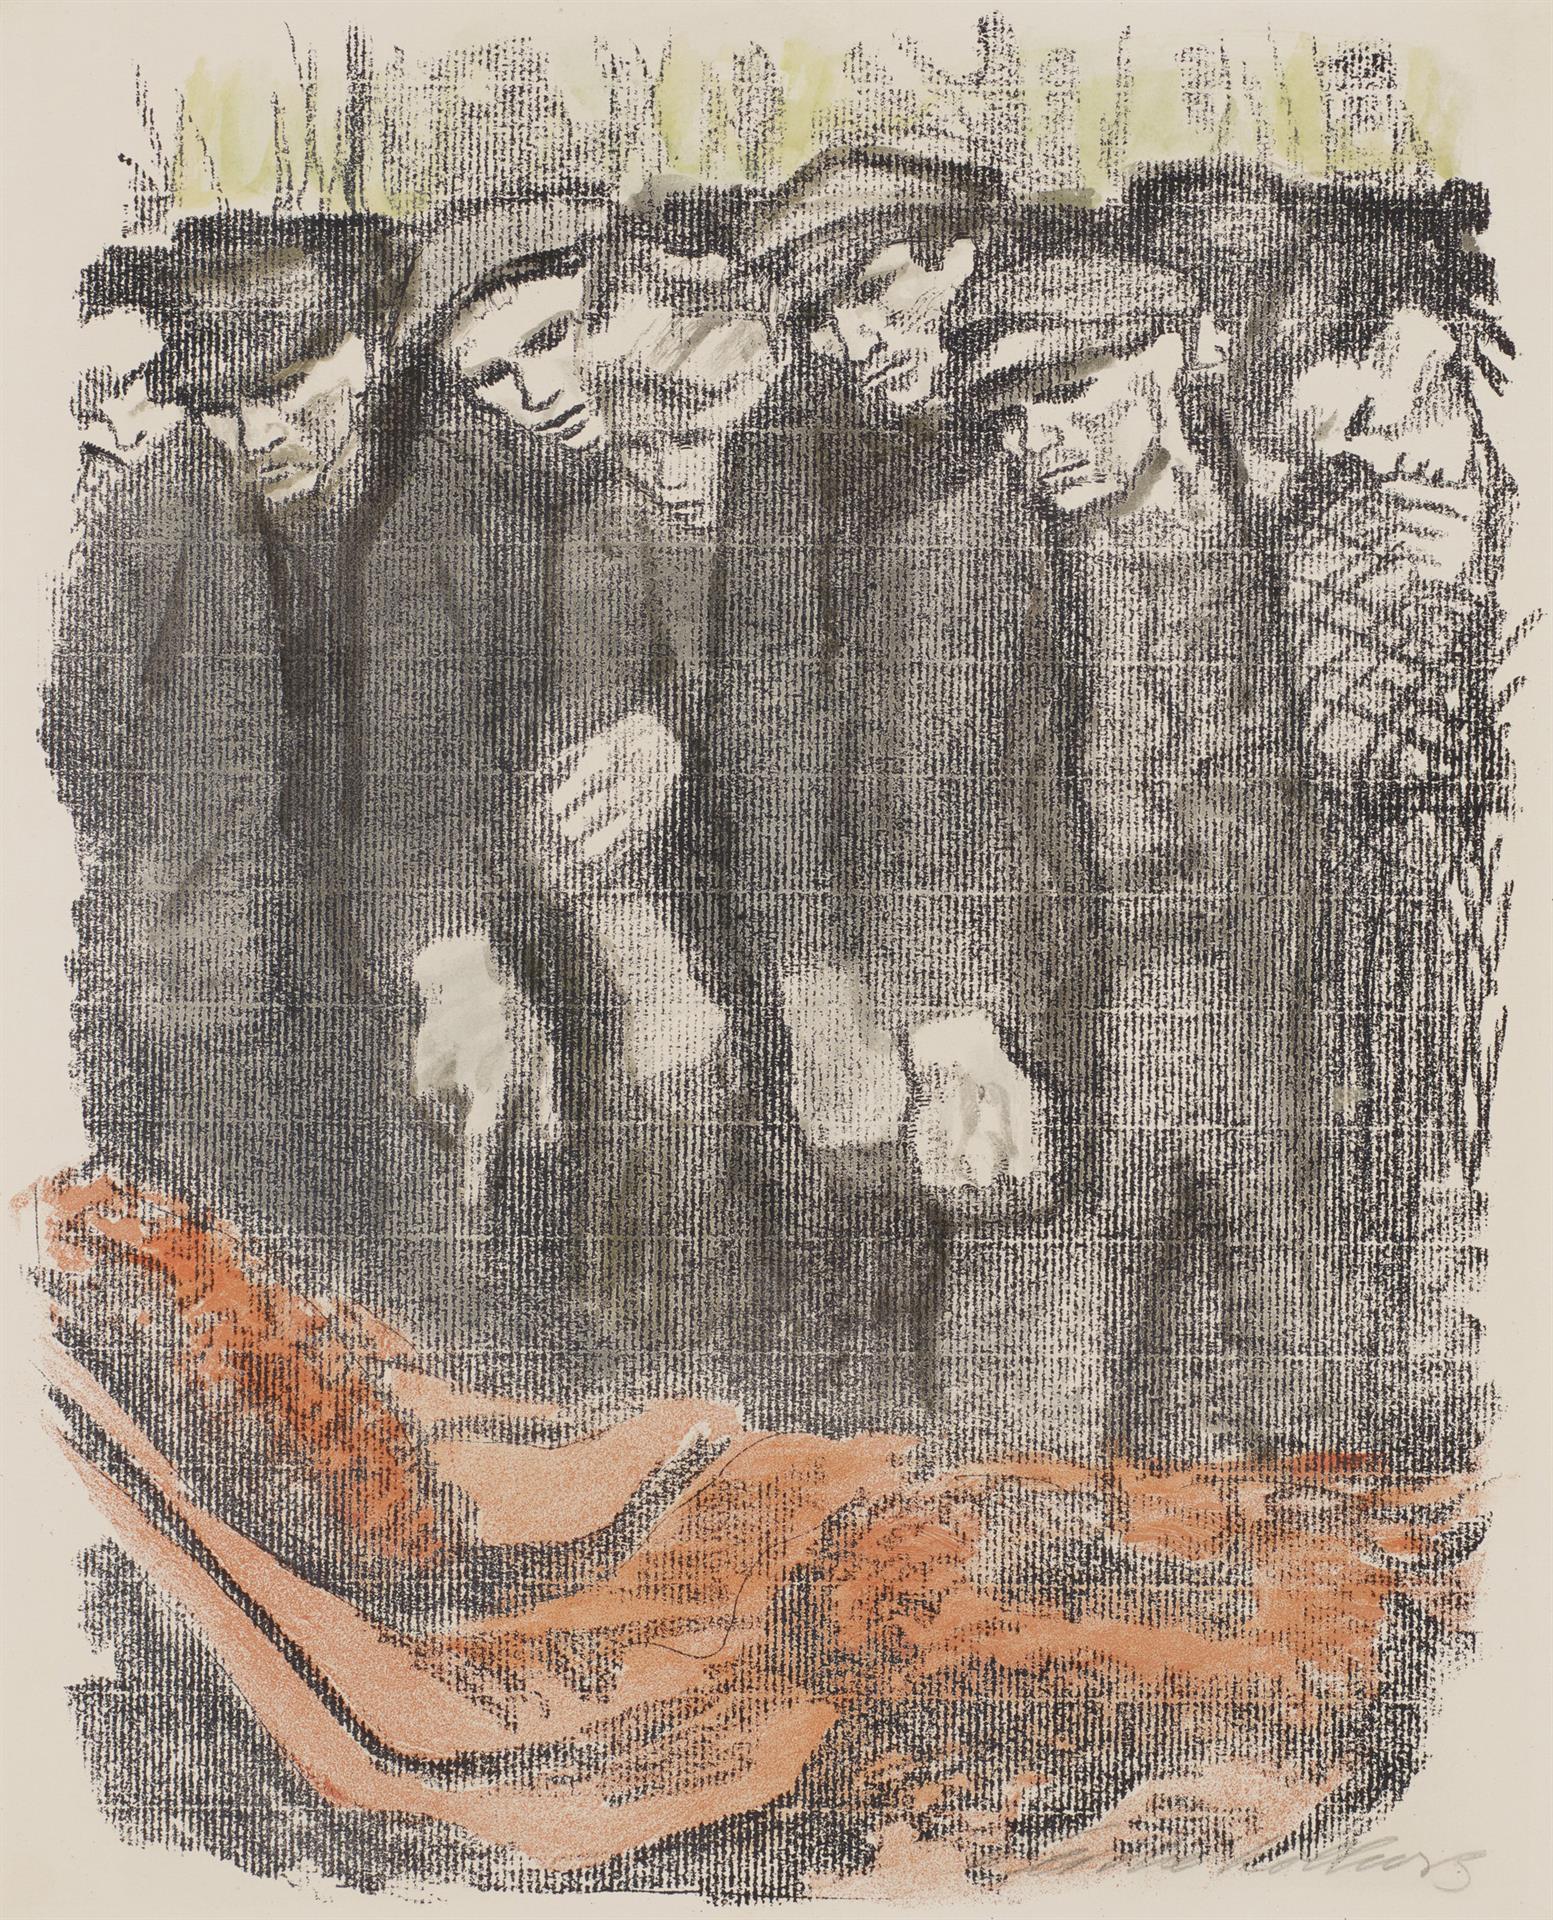 Käthe Kollwitz, Cimetière de mars, deuxième version, 1913, lithographie au crayon en deux couleurs (report), Kn 128, Collection Kollwitz de Cologne © Käthe Kollwitz Museum Köln